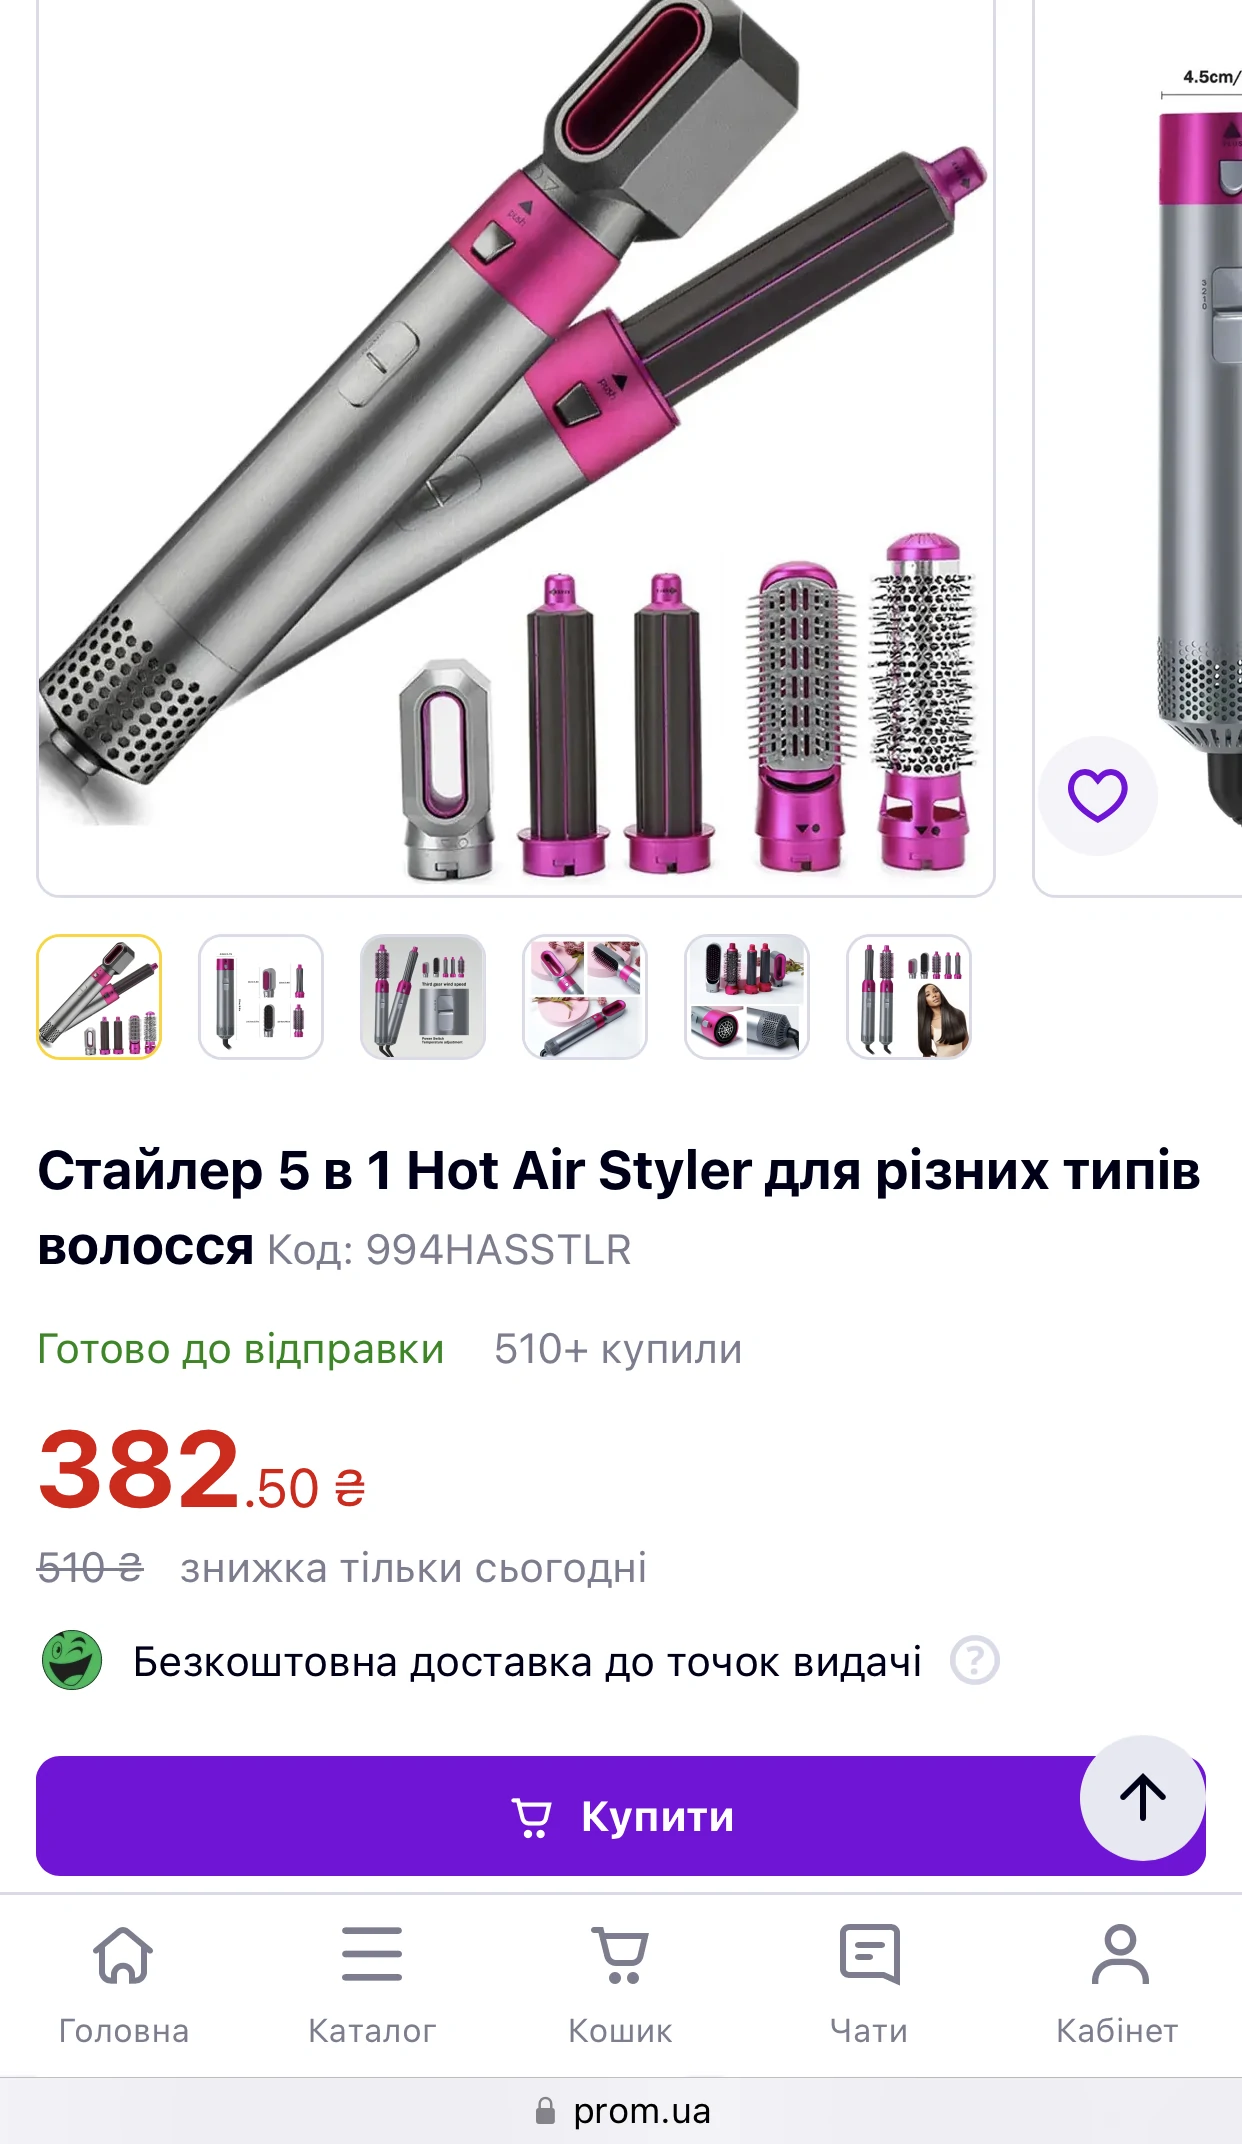 Скріншот на Prom.ua де цей товар коштує 382 грн